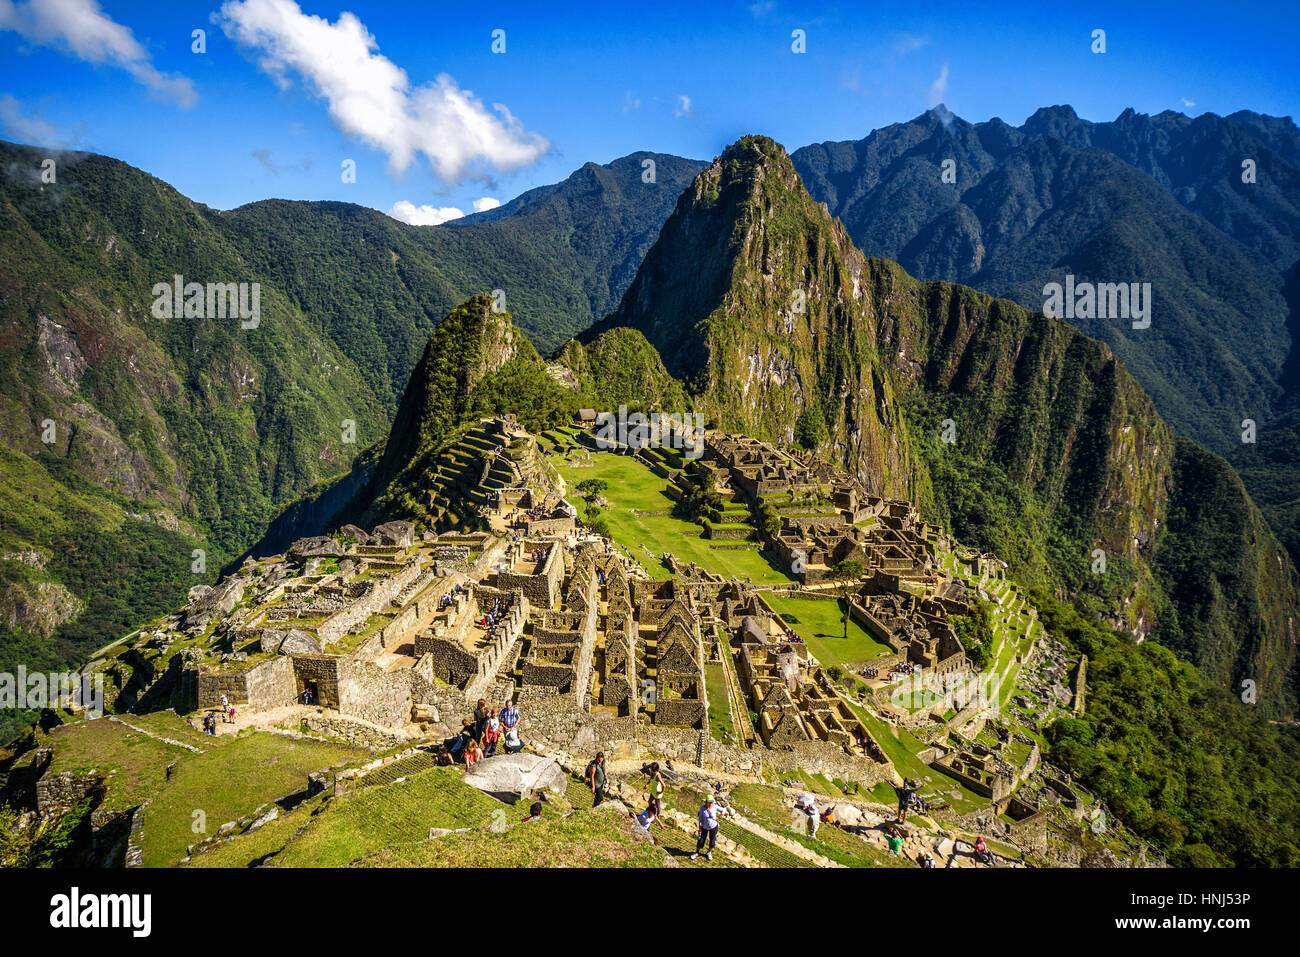 Blick auf die verlorene Inka-Stadt Machu Picchu in der Nähe von Cusco, Peru. Machu Picchu ist eine peruanische historische Heiligtum. Im Vordergrund sind Menschen zu sehen. Stockfoto